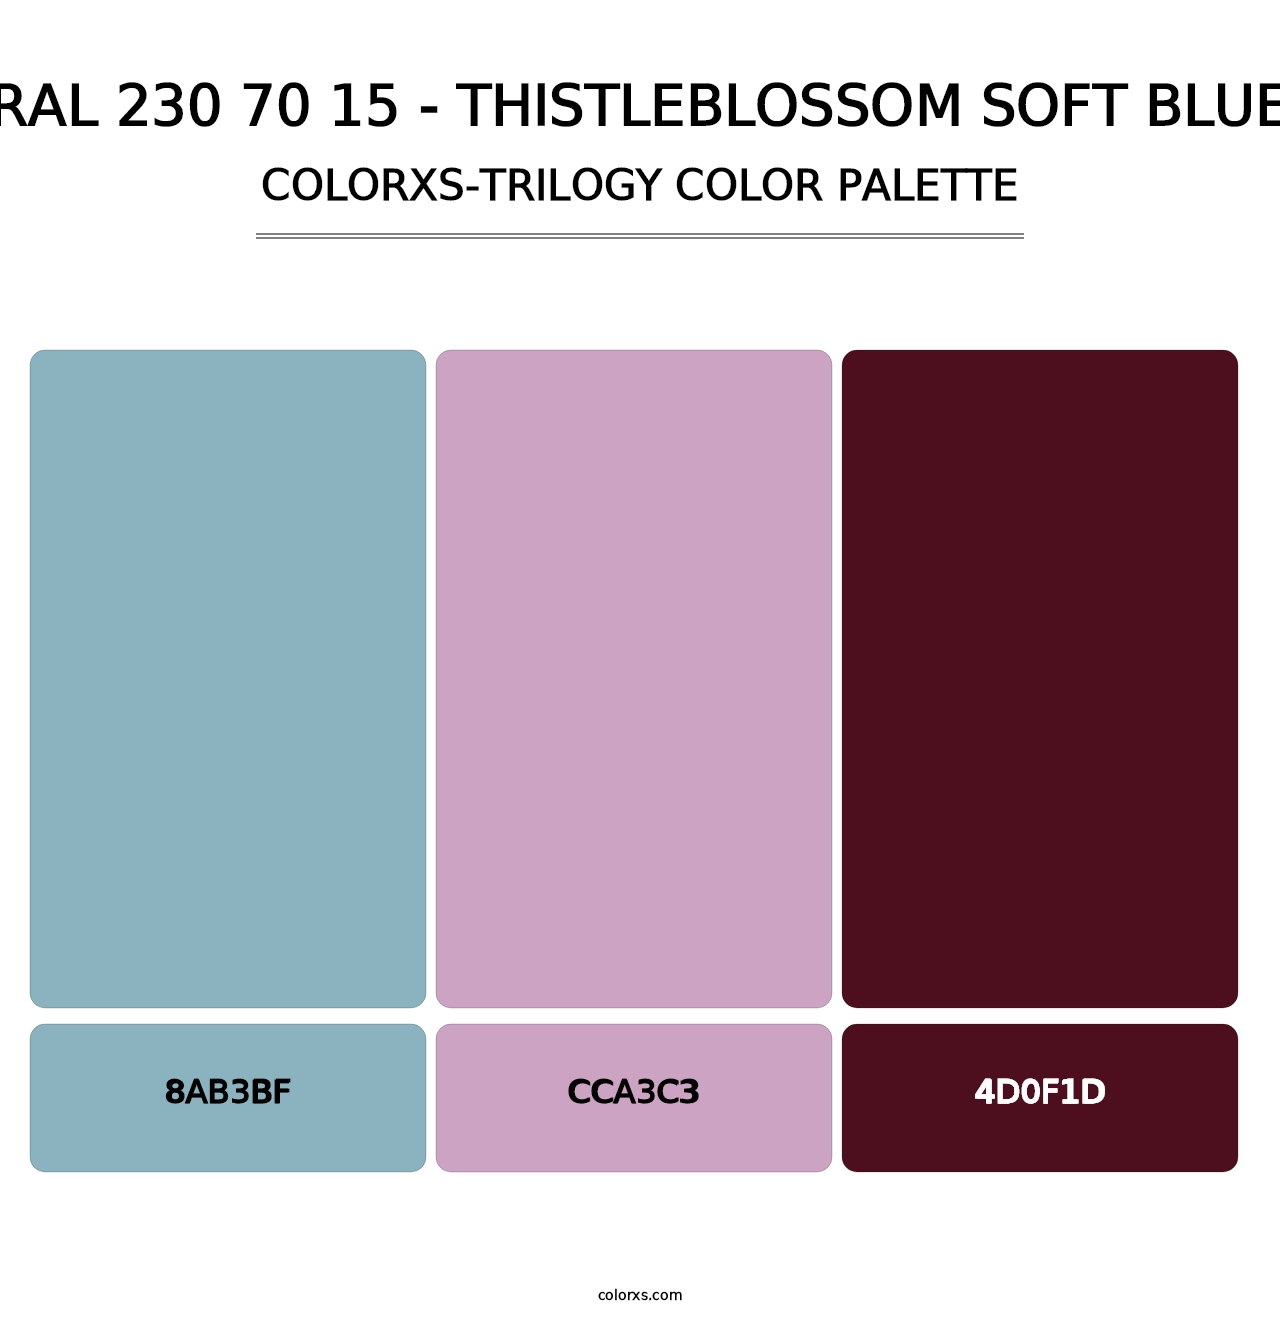 RAL 230 70 15 - Thistleblossom Soft Blue - Colorxs Trilogy Palette